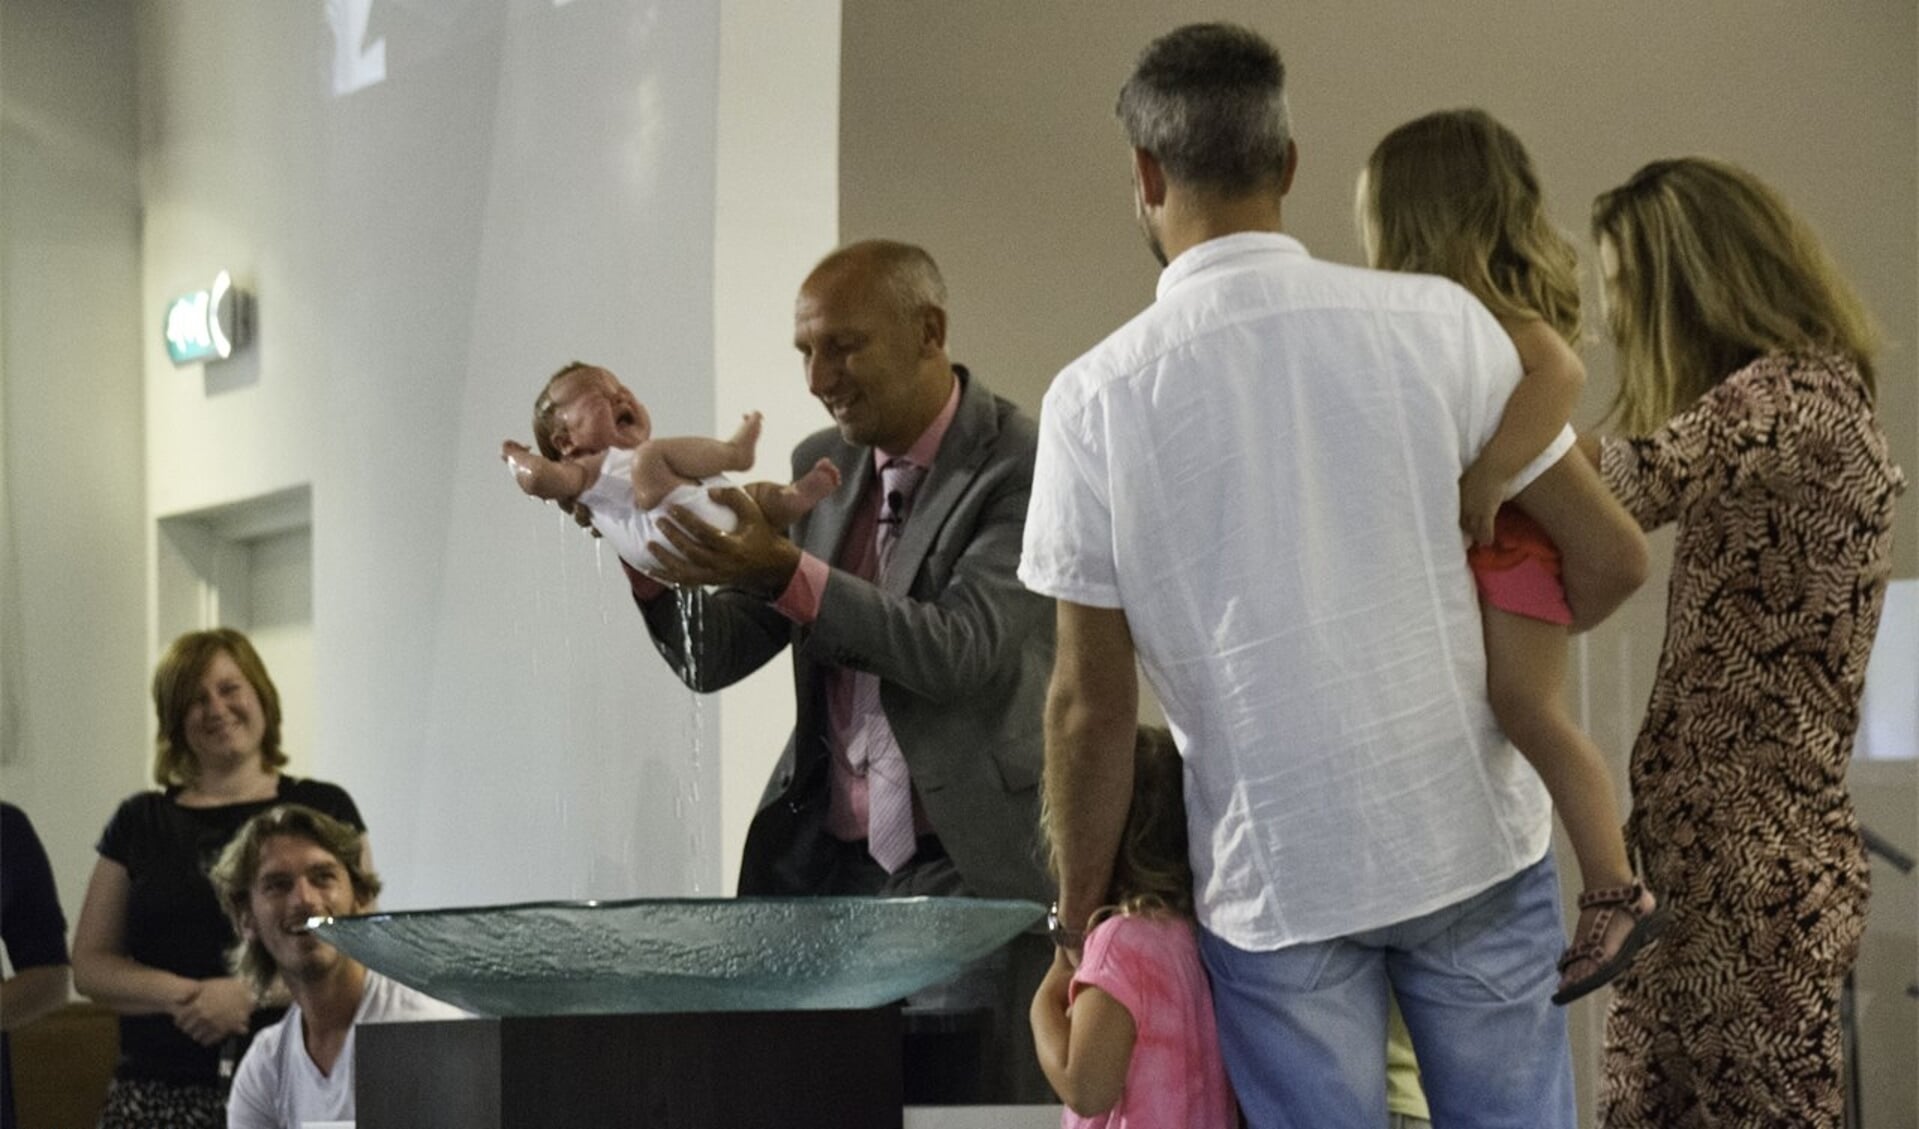 Dominee Atze Buursema uit Amersfoort doopt een baby door onderdompeling. ‘Dopen betekent letterlijk onderdompelen.’